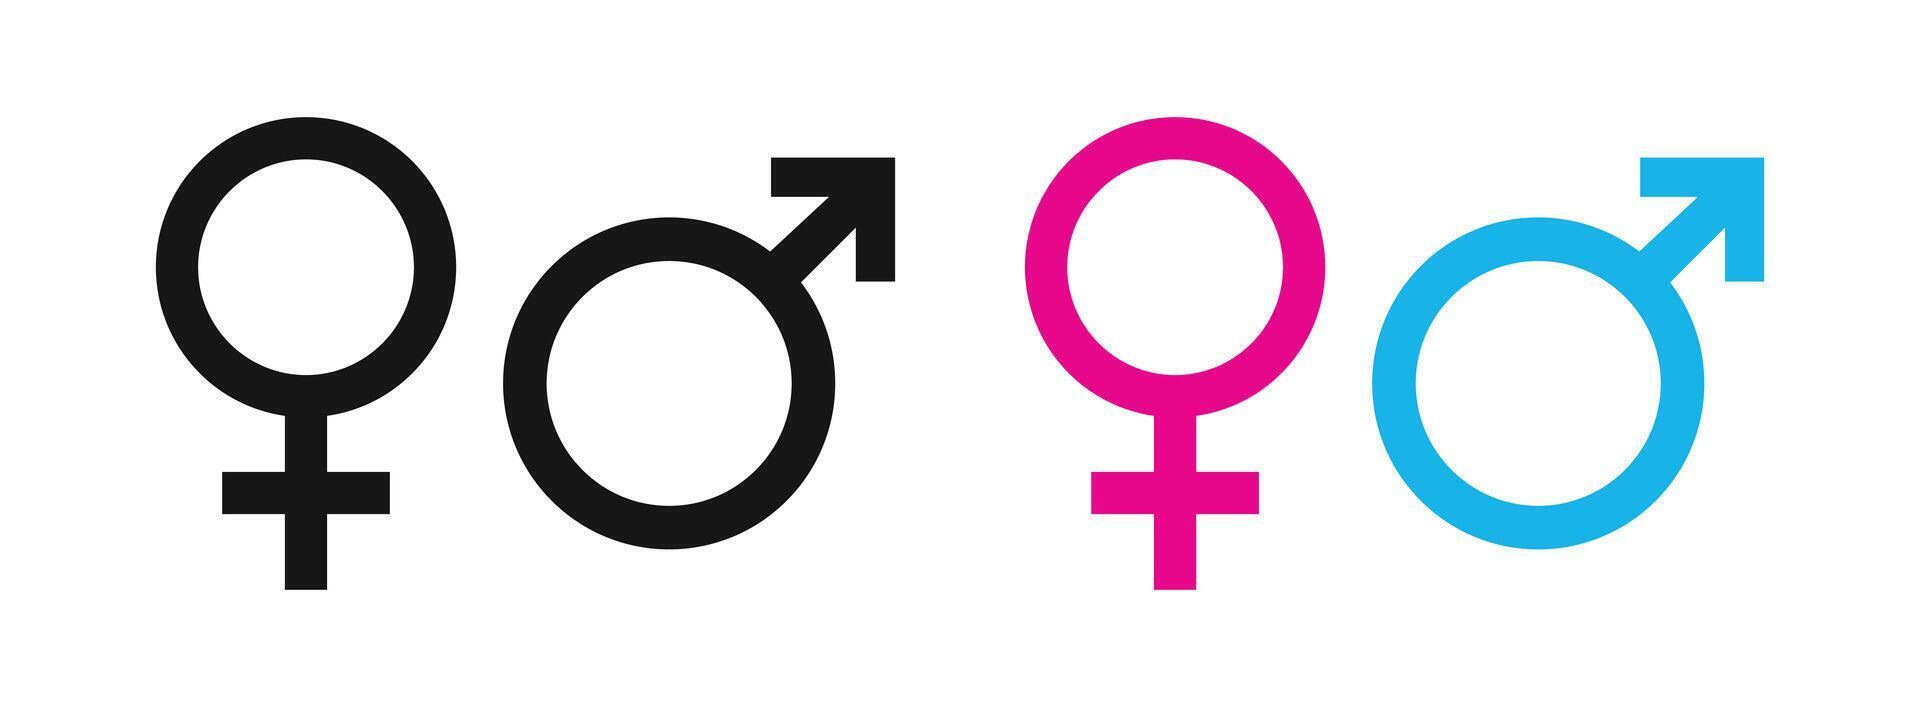 manlig och kvinna kön symboler. kön tecken på vit bakgrund. vektor